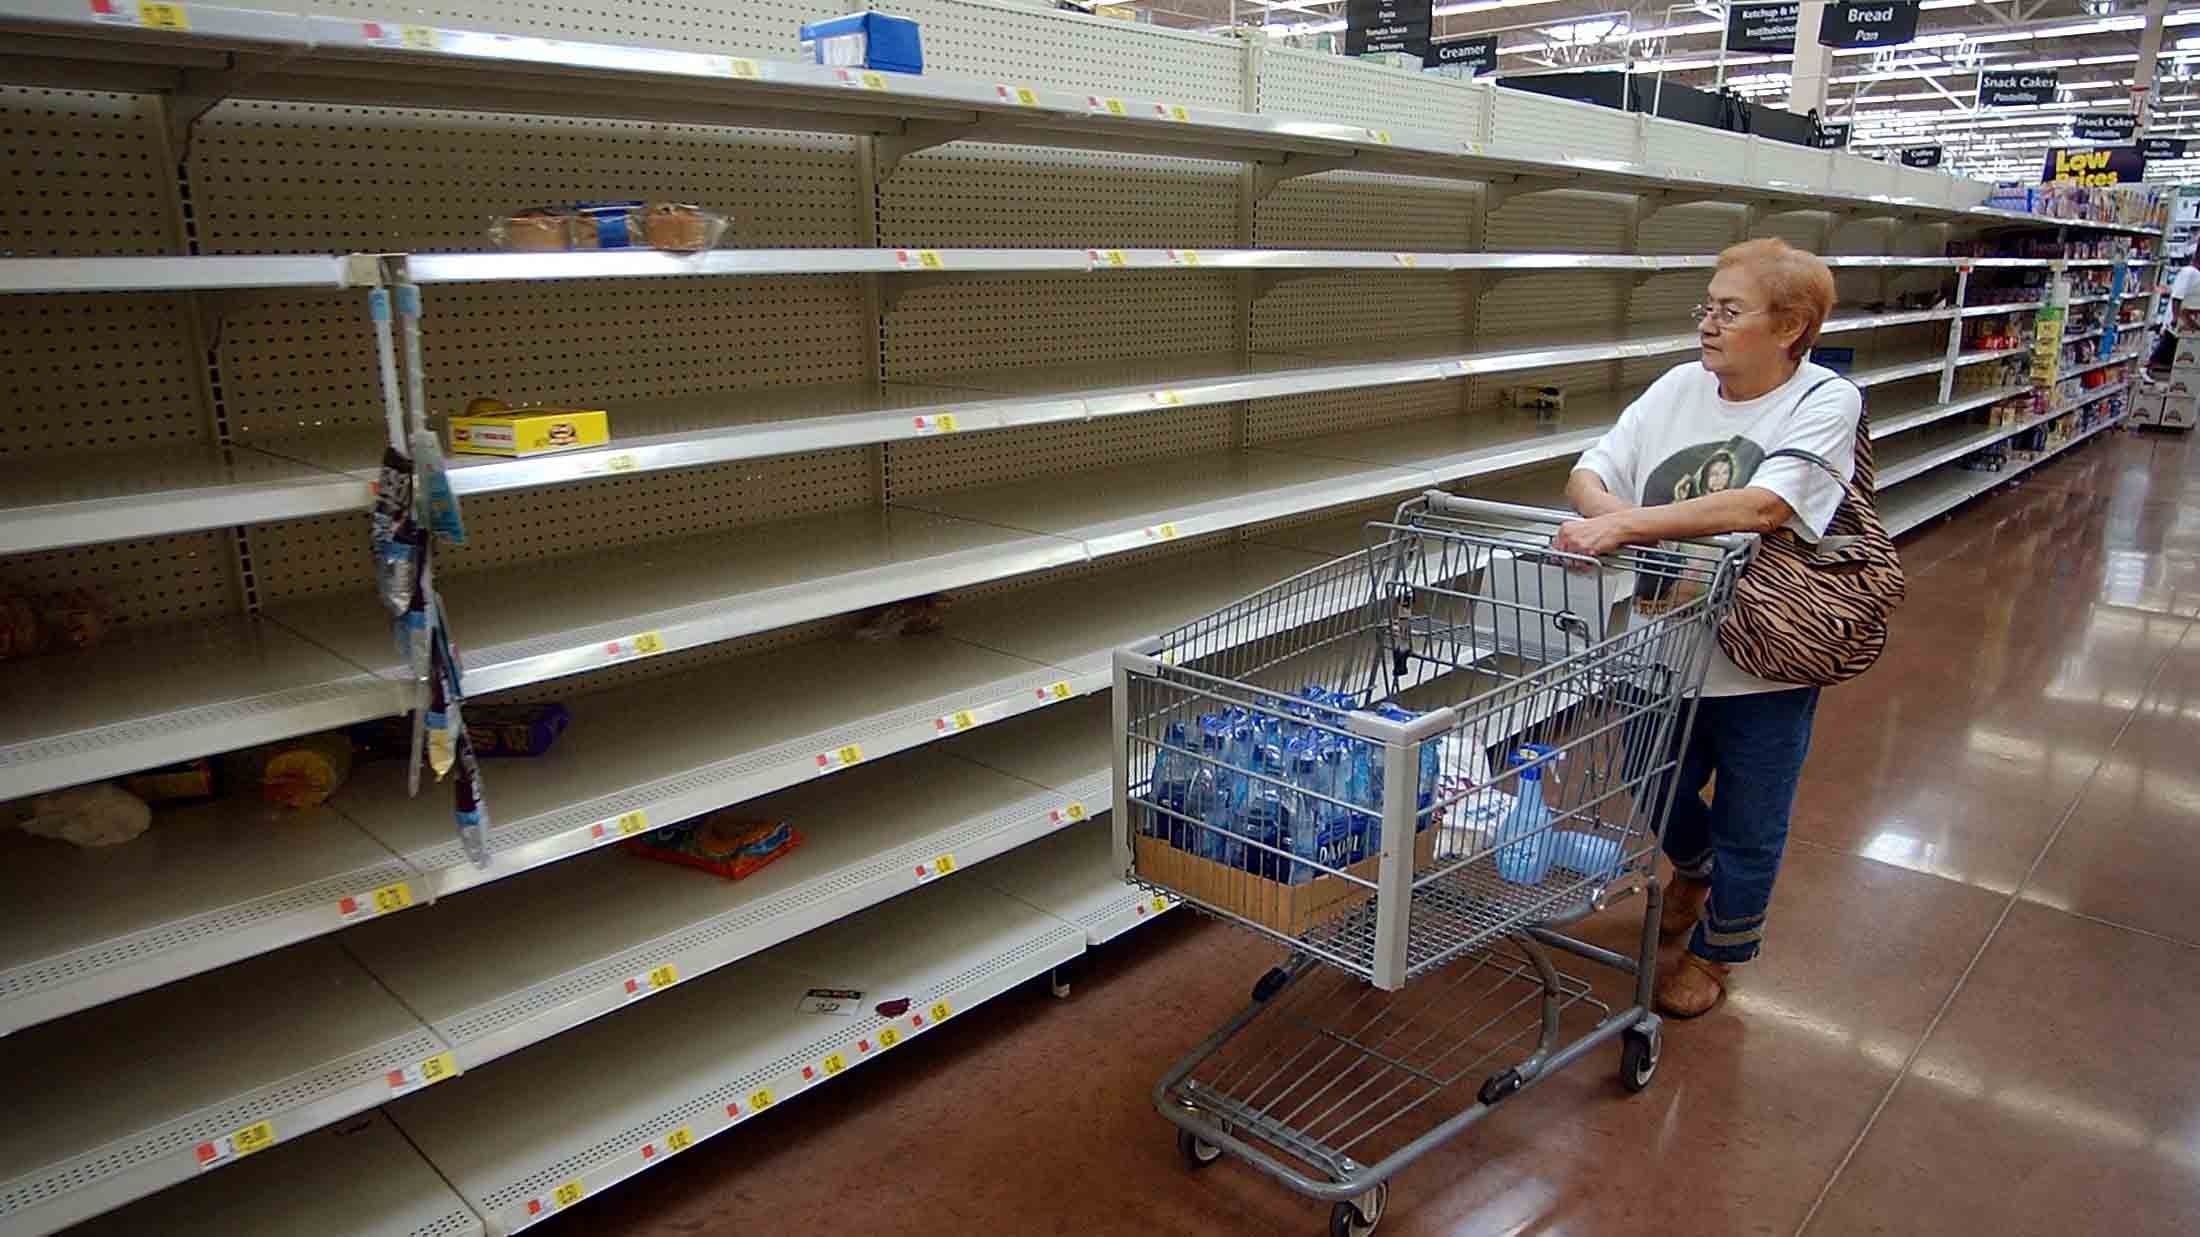 El presidente de la Asociación Nacional de Supermercados llamó a los venezolanos a ser pacientes mientras se normaliza el sistema